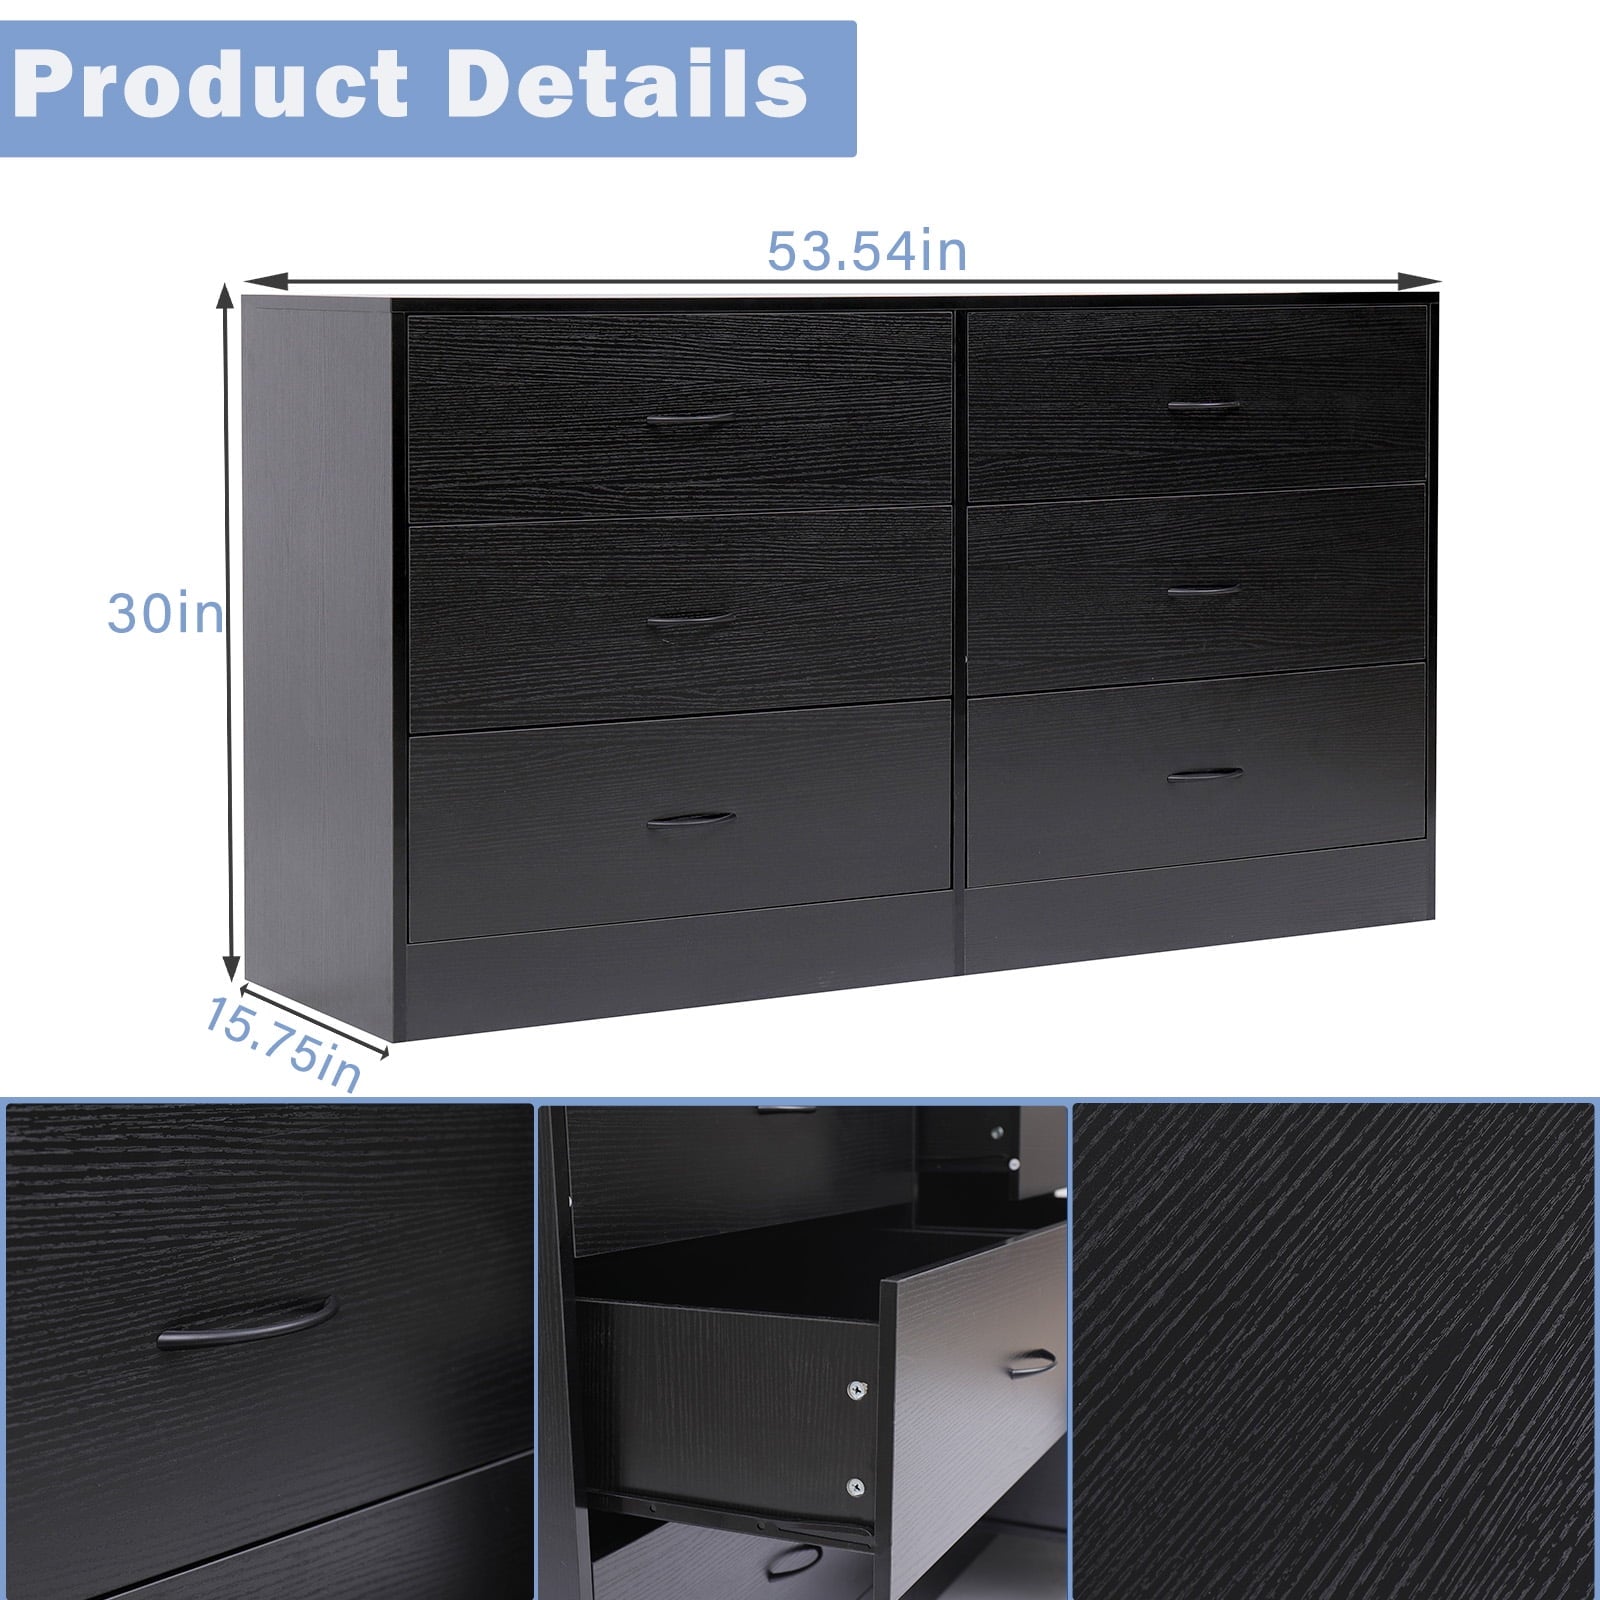 SUGIFT 6 Drawer Double Dresser Black Wood Dresser for Bedroom